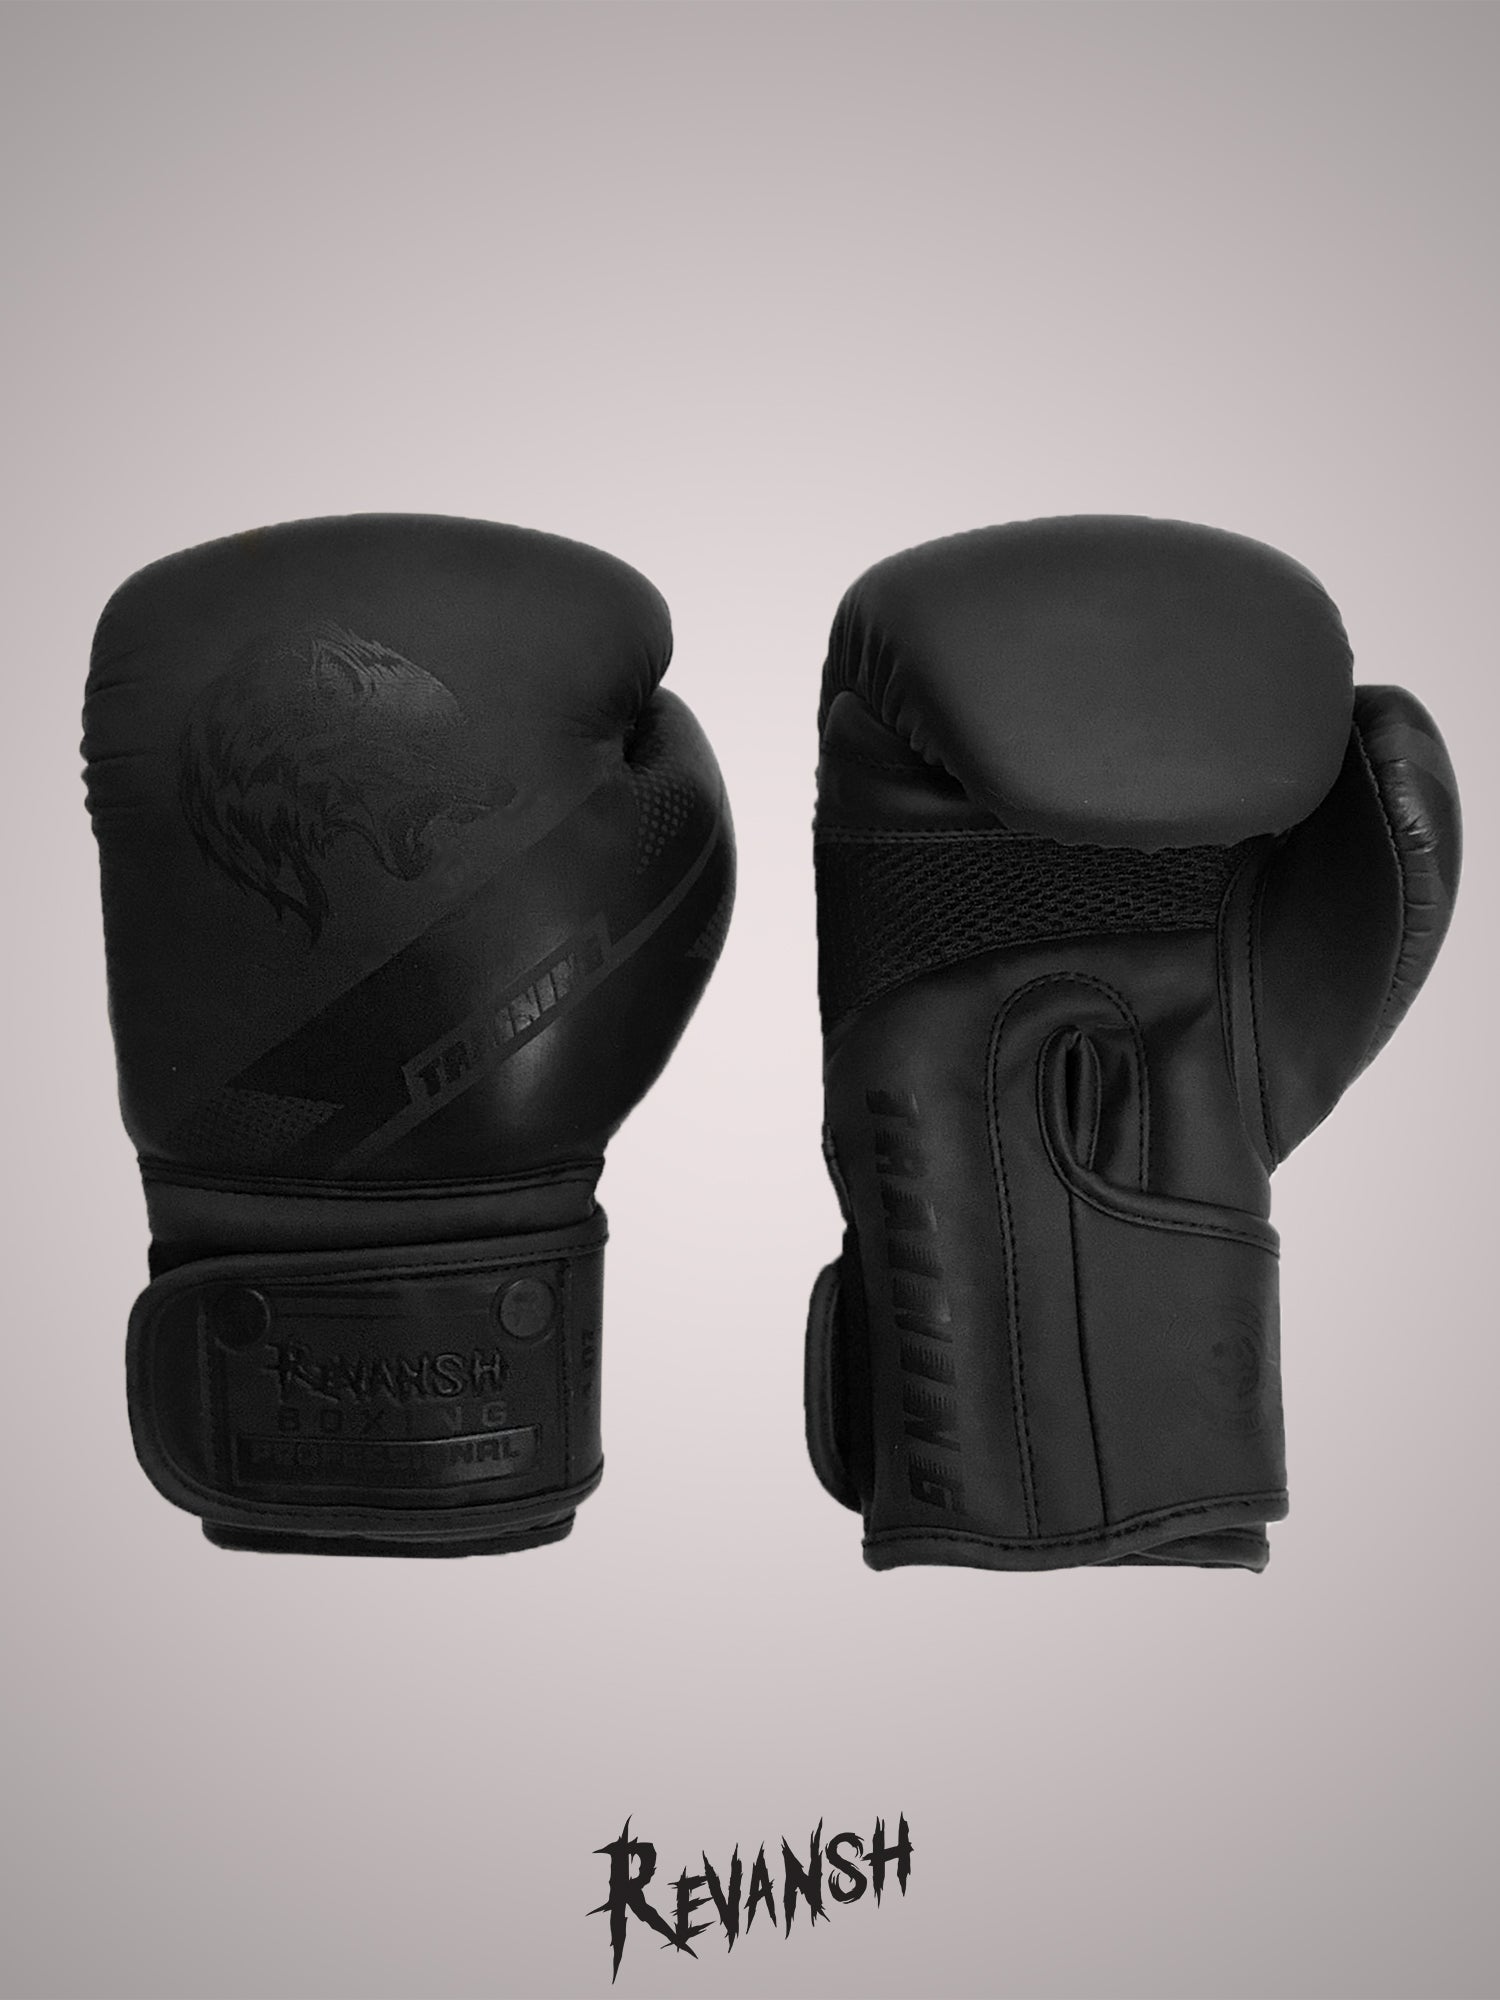 Boxing gloves REVANSH NEO, Black-Black